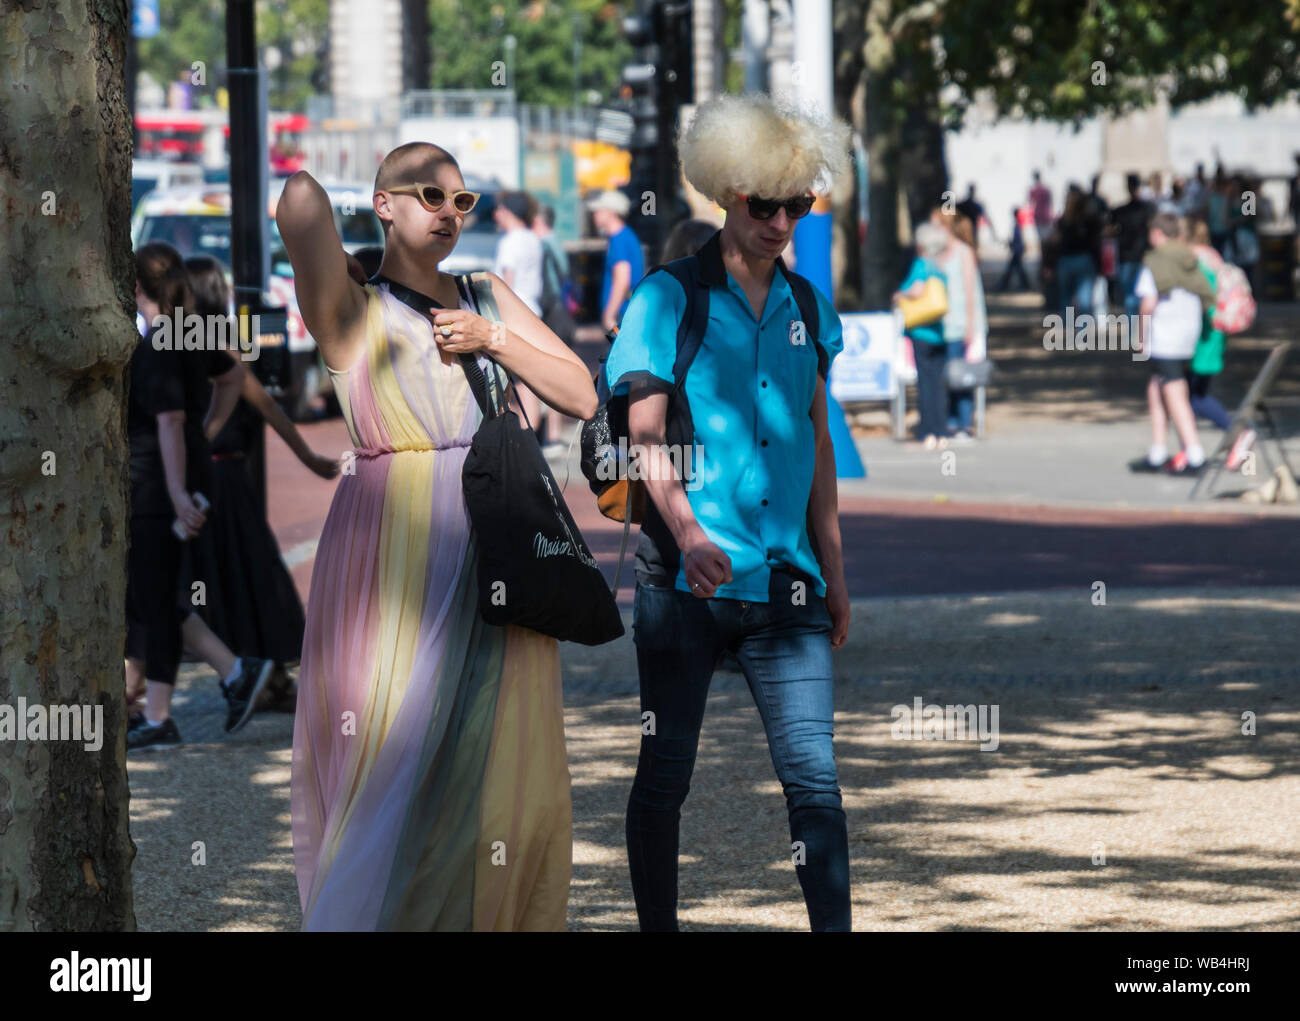 Jeune couple mâle et femelle de personnes habillées dans un style moderne unique au centre de Londres, Angleterre, Royaume-Uni. Mode de vie moderne. À la différente. Look unique. Banque D'Images